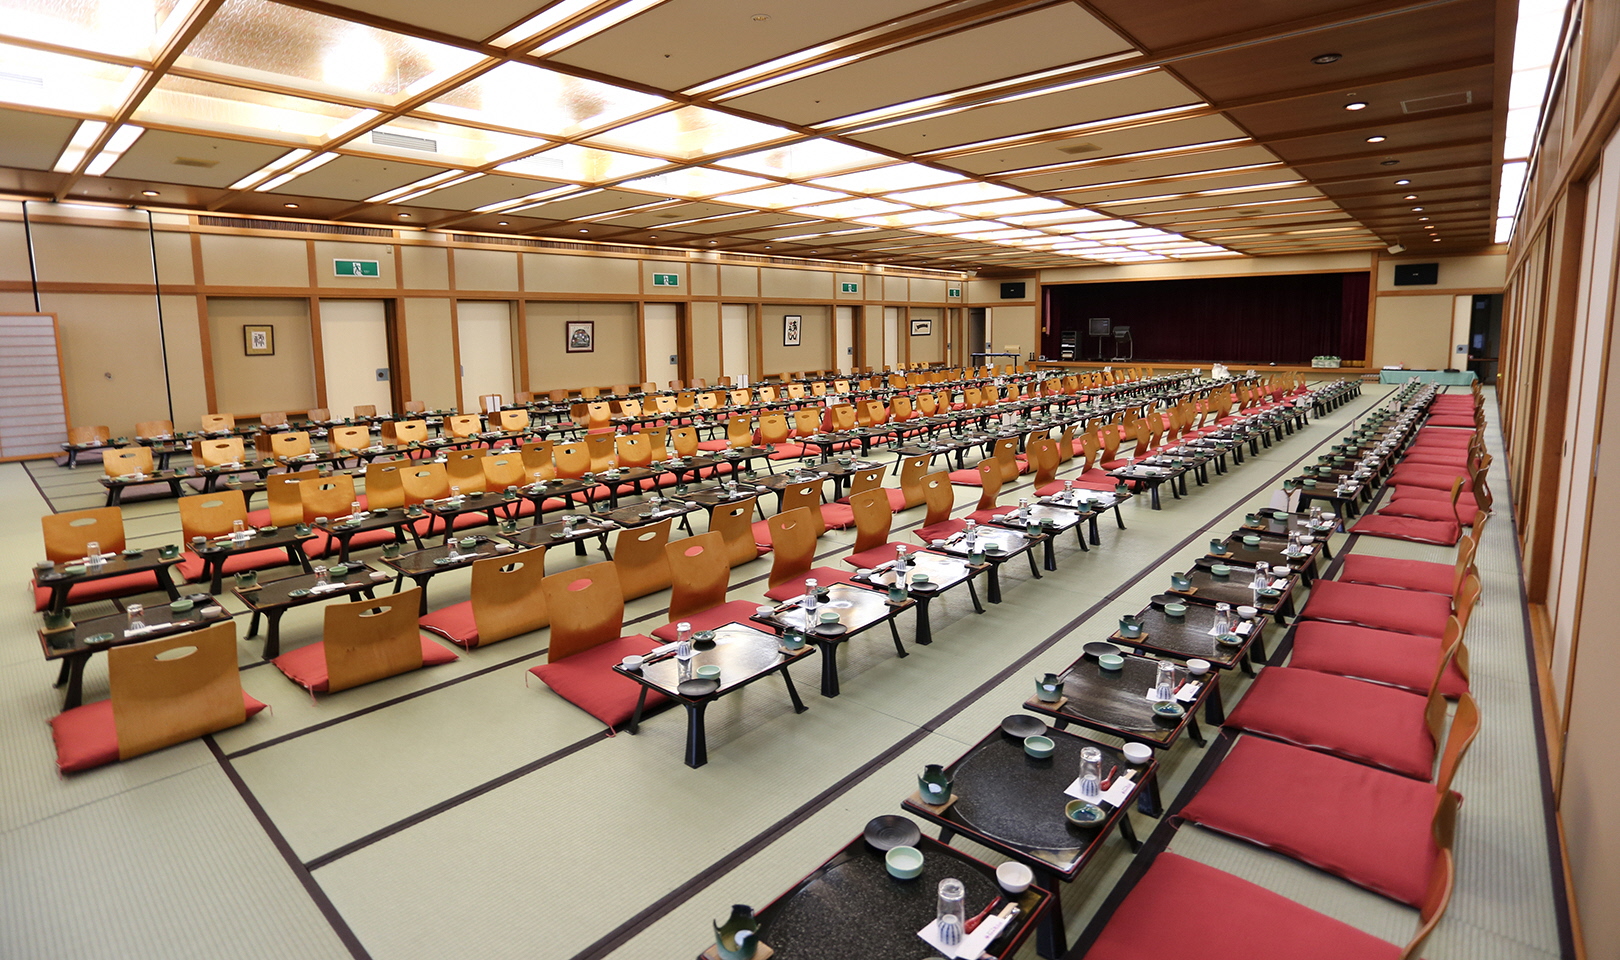 The large banquet room "Kaga Shishi-no-Ma"